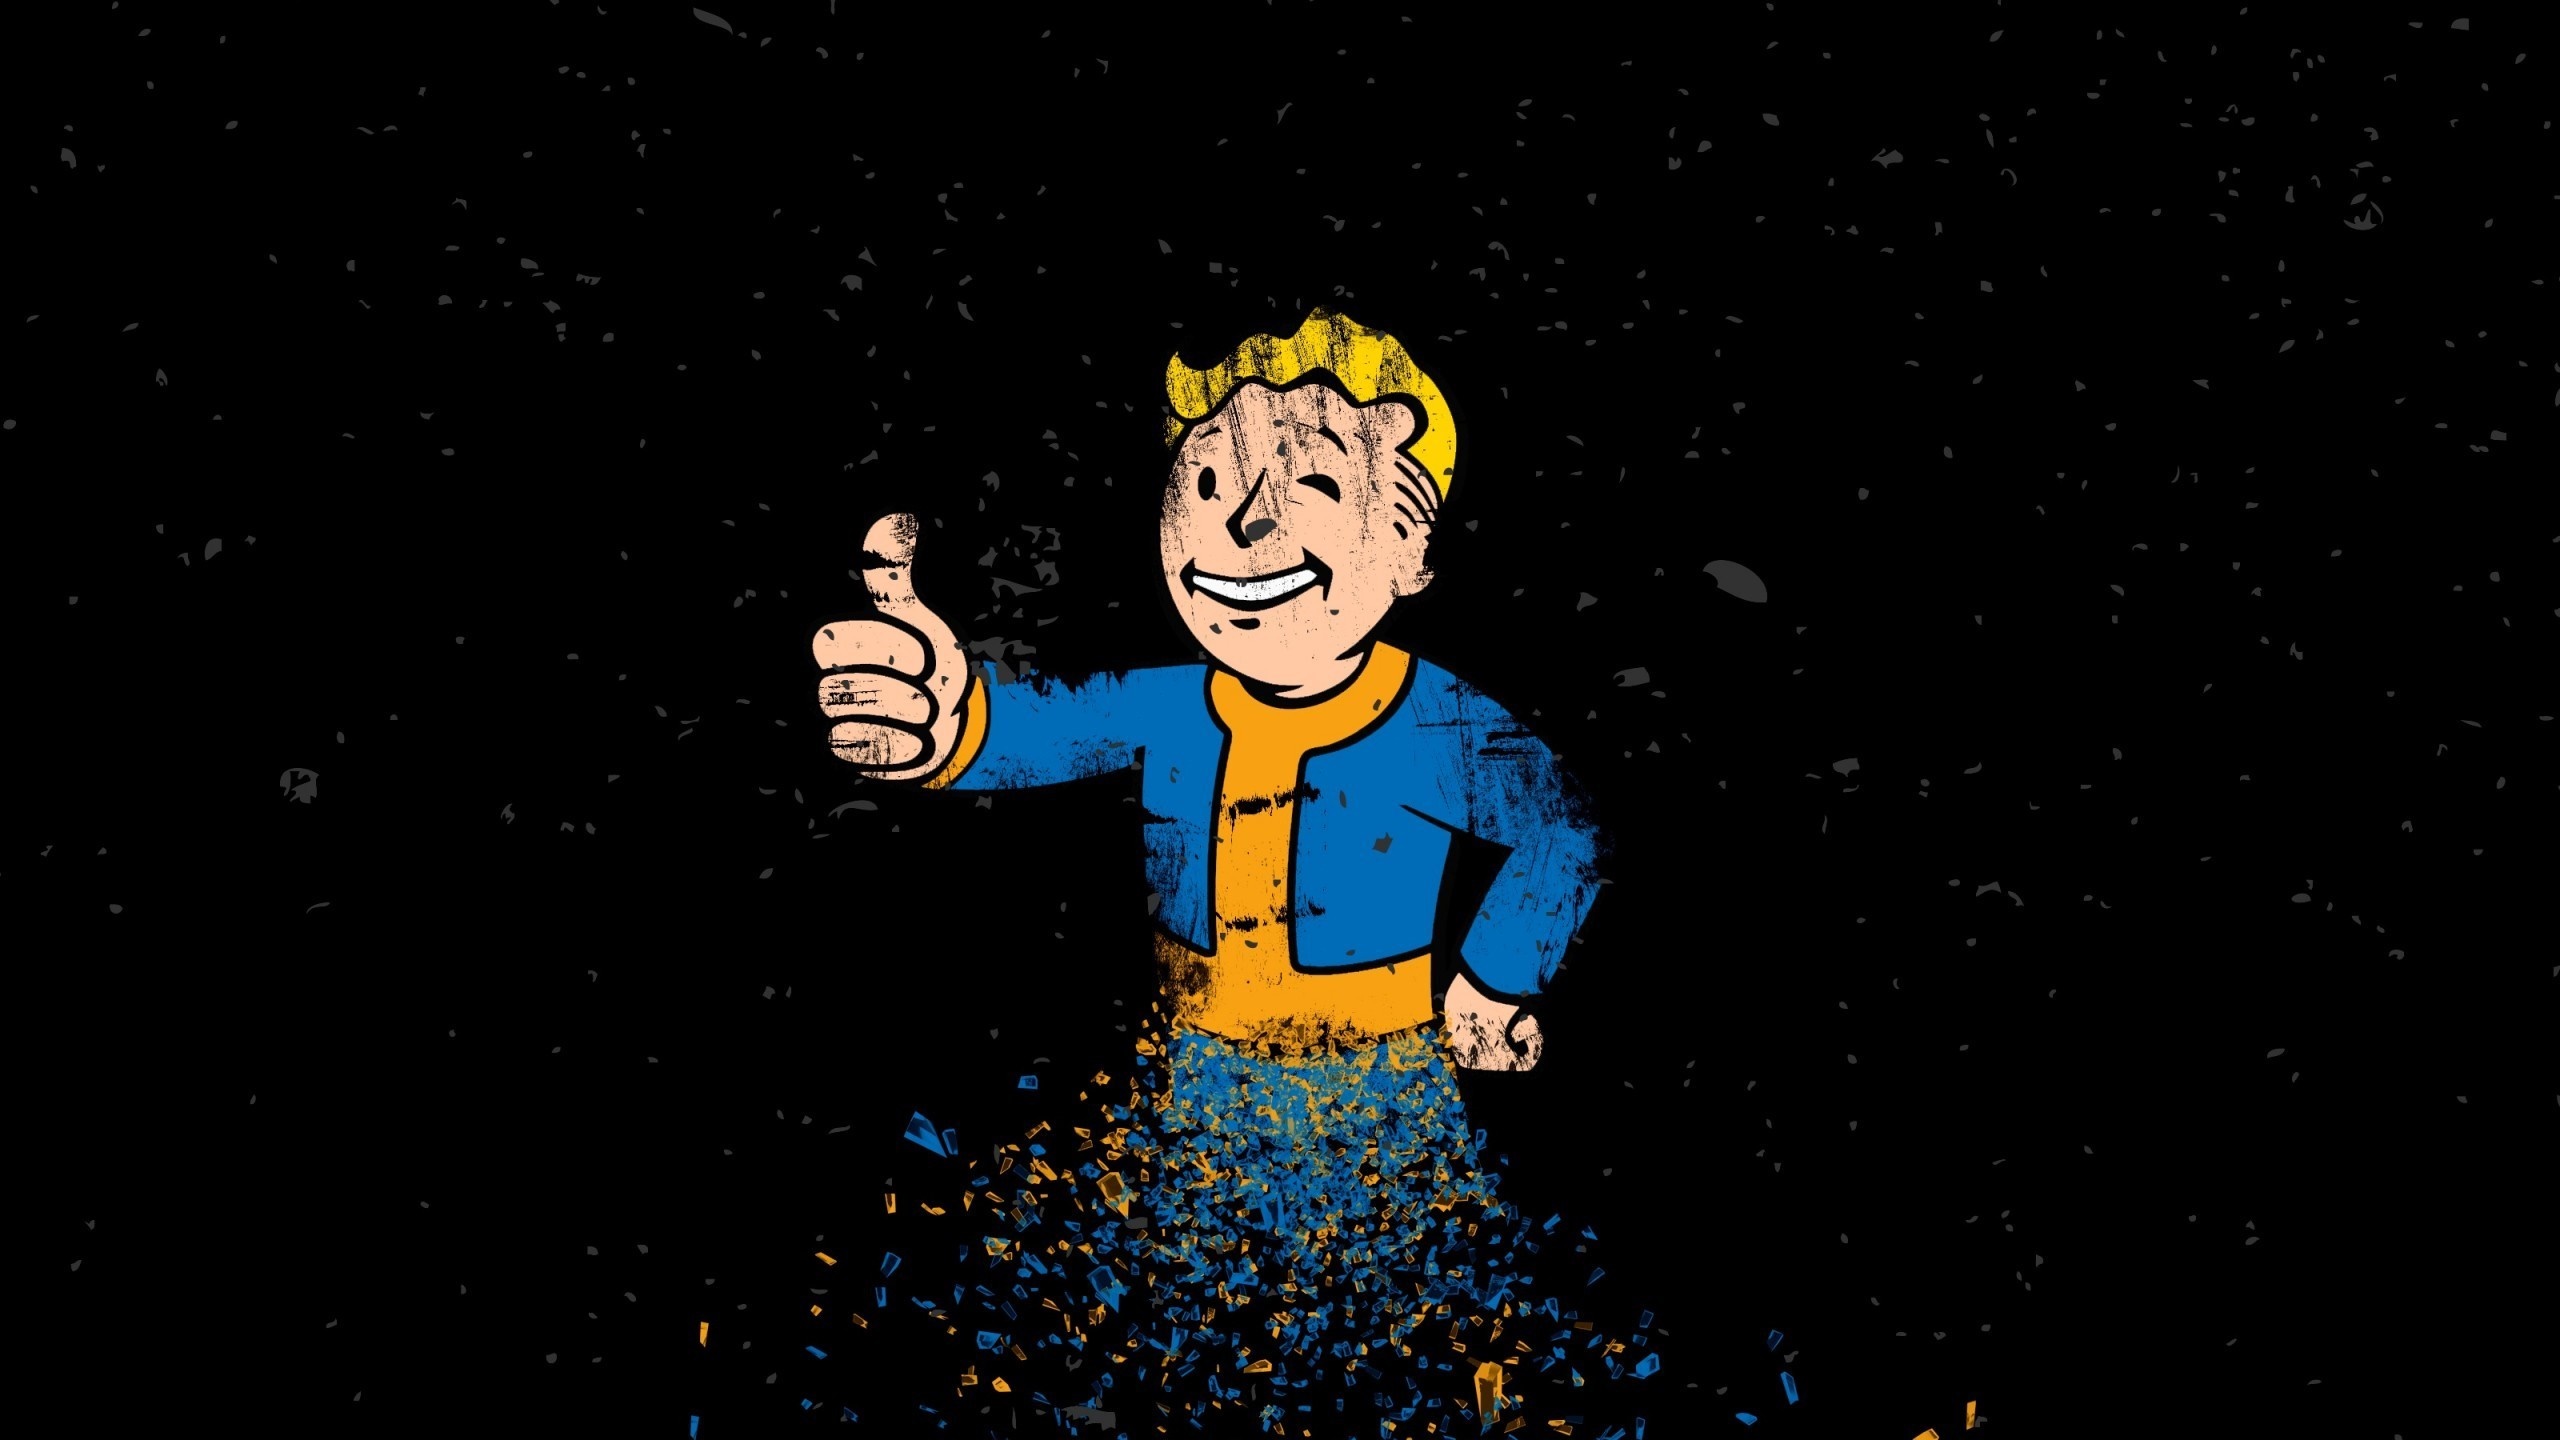 Illustration cartoon fallout fallout vault boy darkness screenshot puter wallpaper album cover